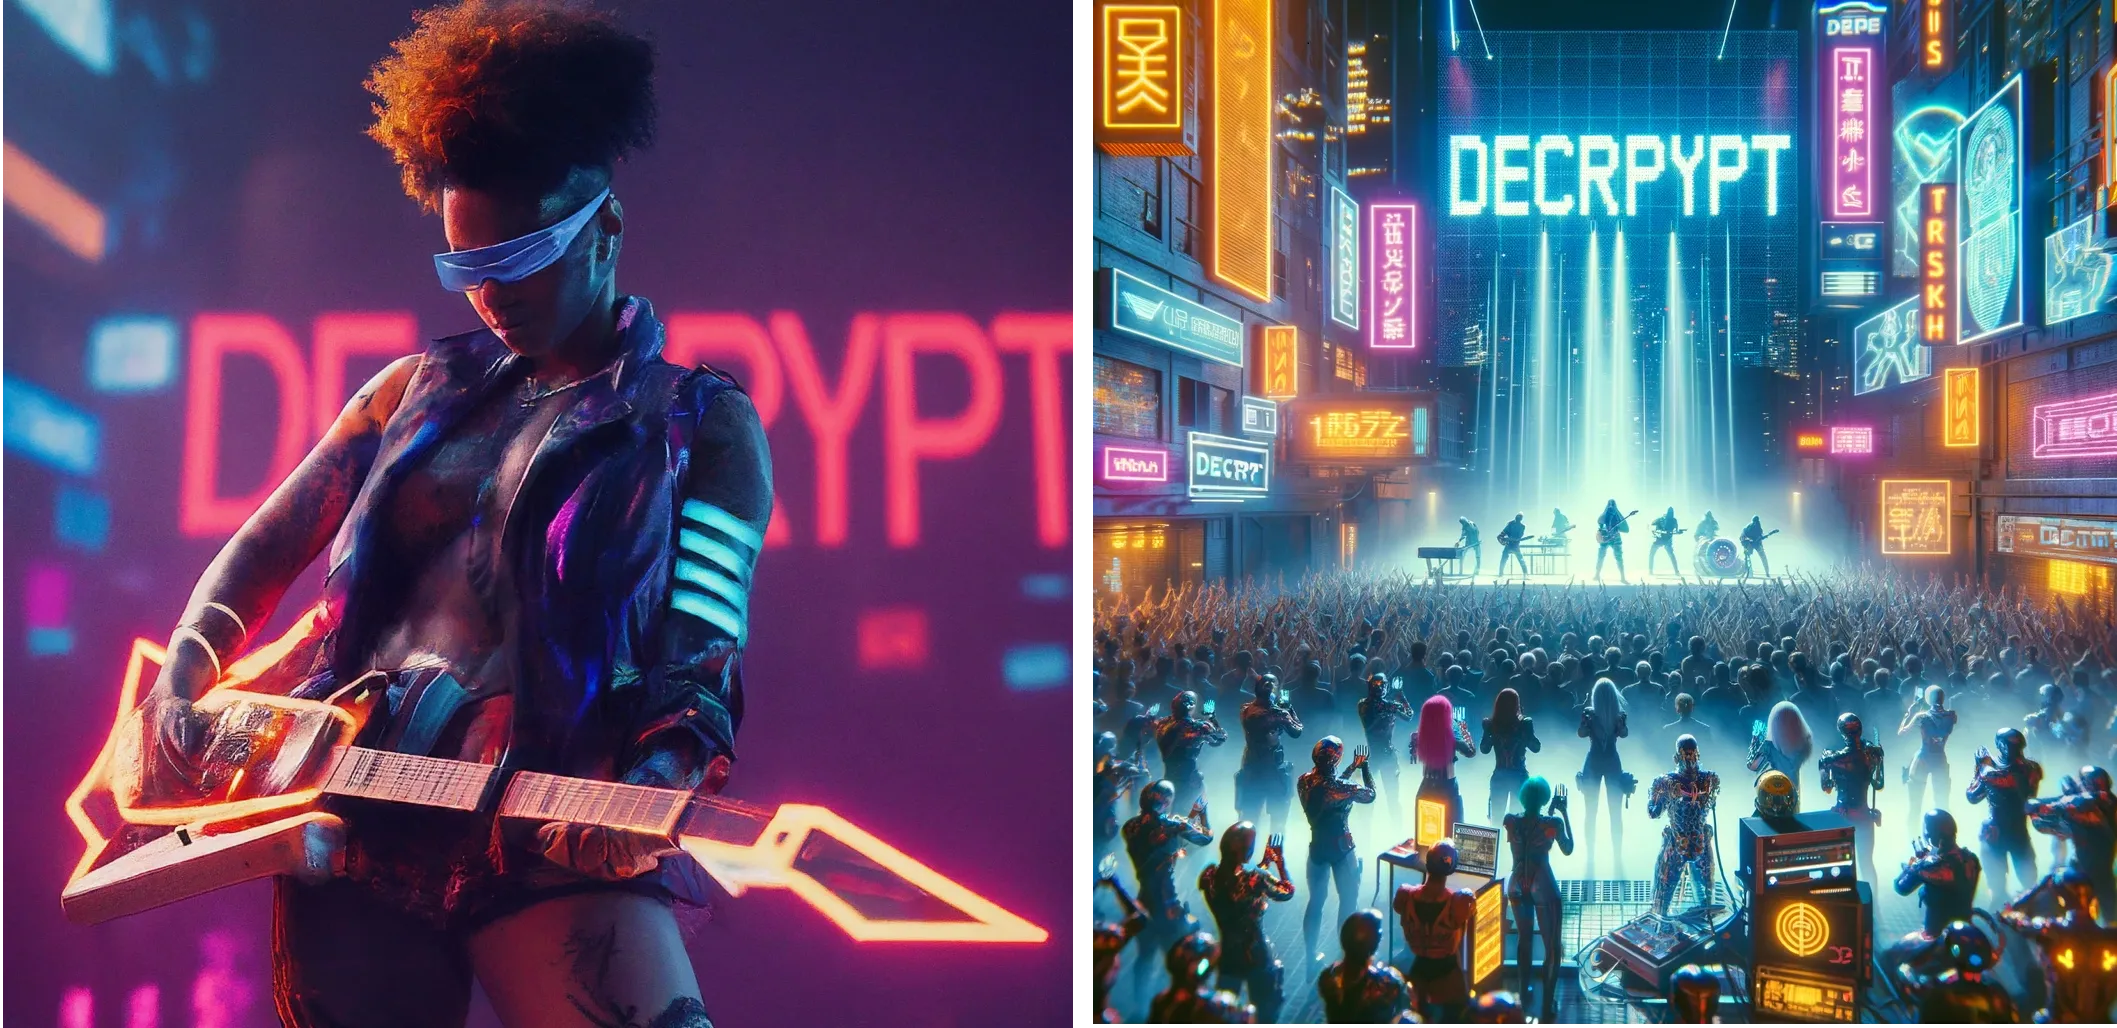 Cyberpunk fütüristik sanatçısı, arka planda neon ışıklarında "DECRYPT" kelimesiyle sahnede performans sergiliyor. Gemini (solda) ve ChatGPT Plus (sağda)